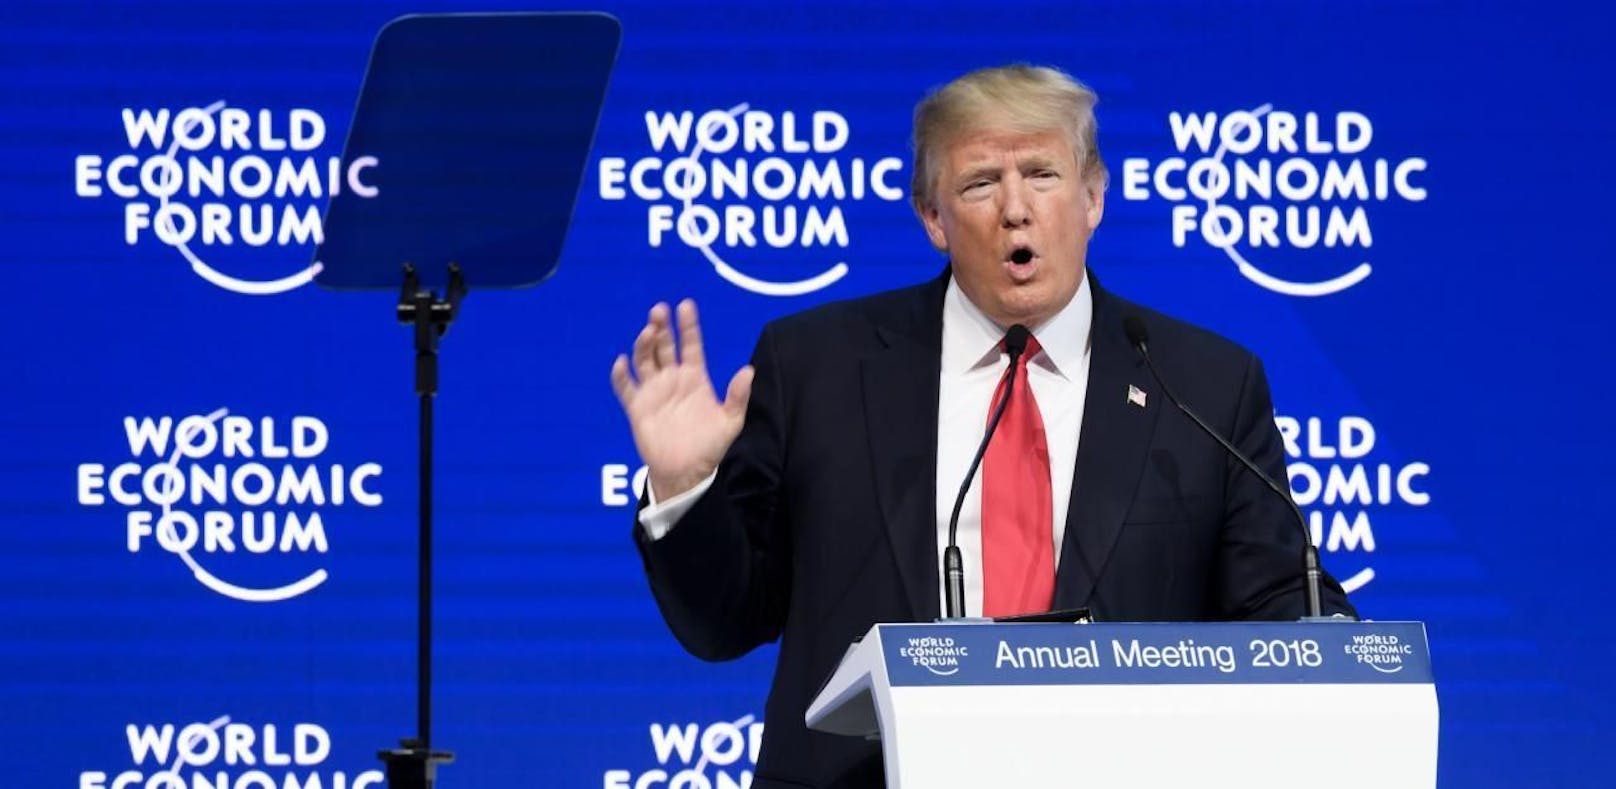 Donald Trump sprach am Weltwirtschaftsforum 2018.